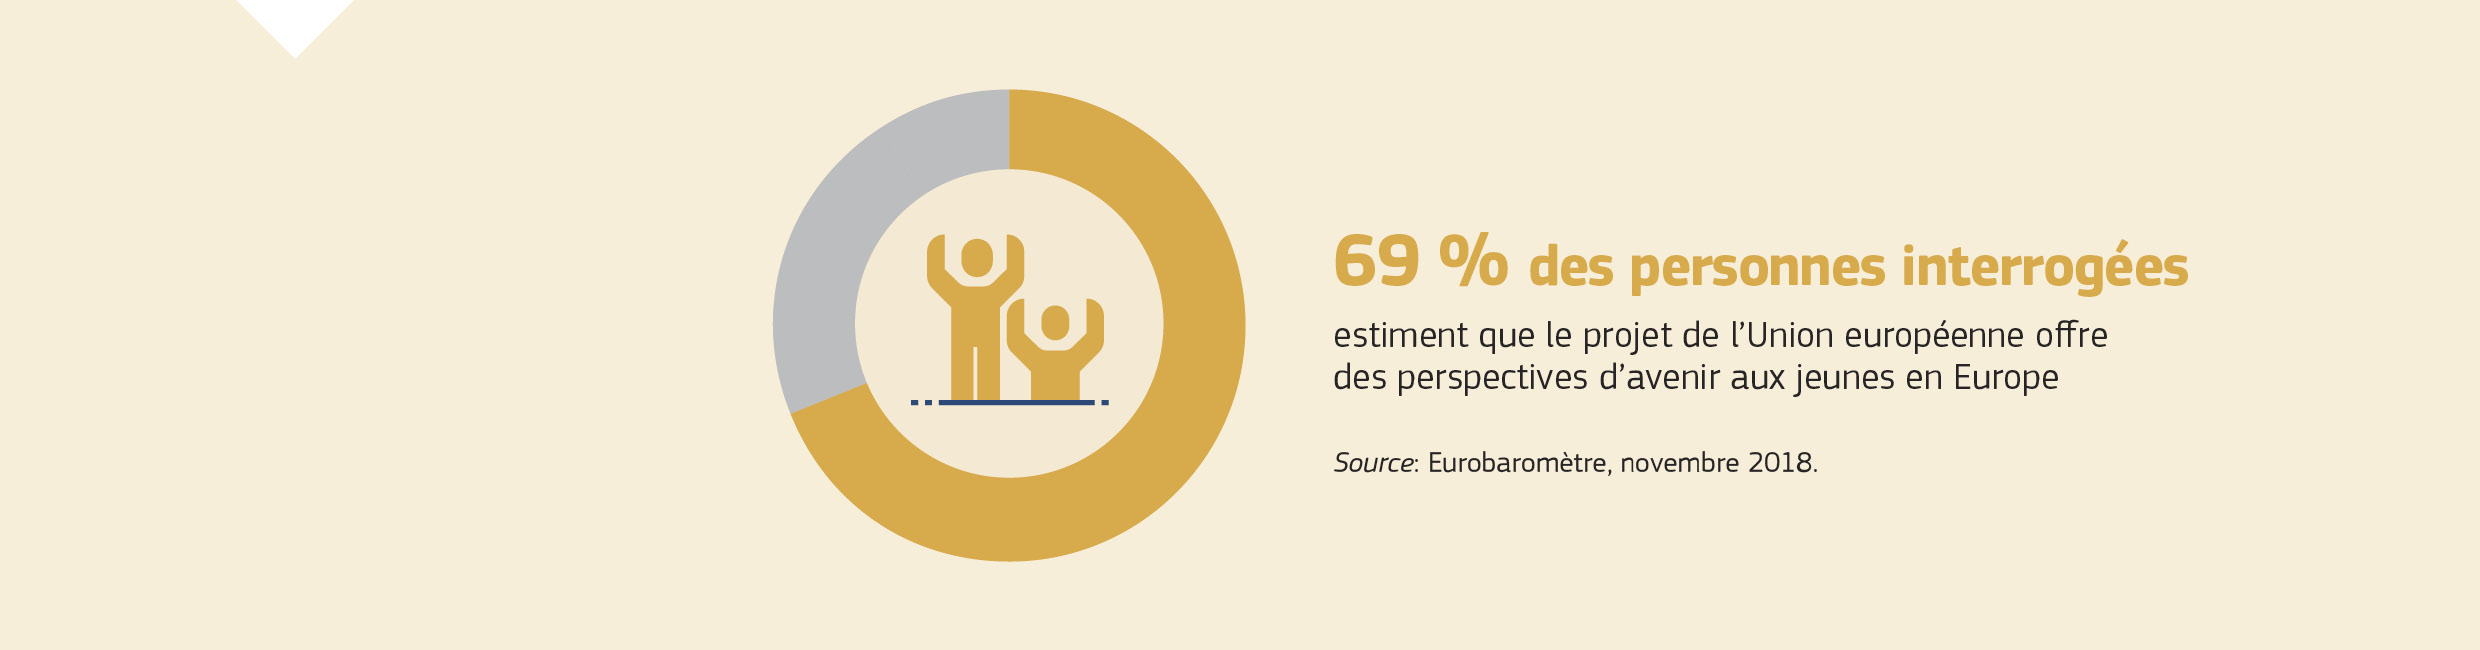 69 % des personnes interrogées estiment que le projet de l’Union européenne offre des perspectives d’avenir aux jeunes en Europe. Source: Eurobaromètre, novembre 2018.